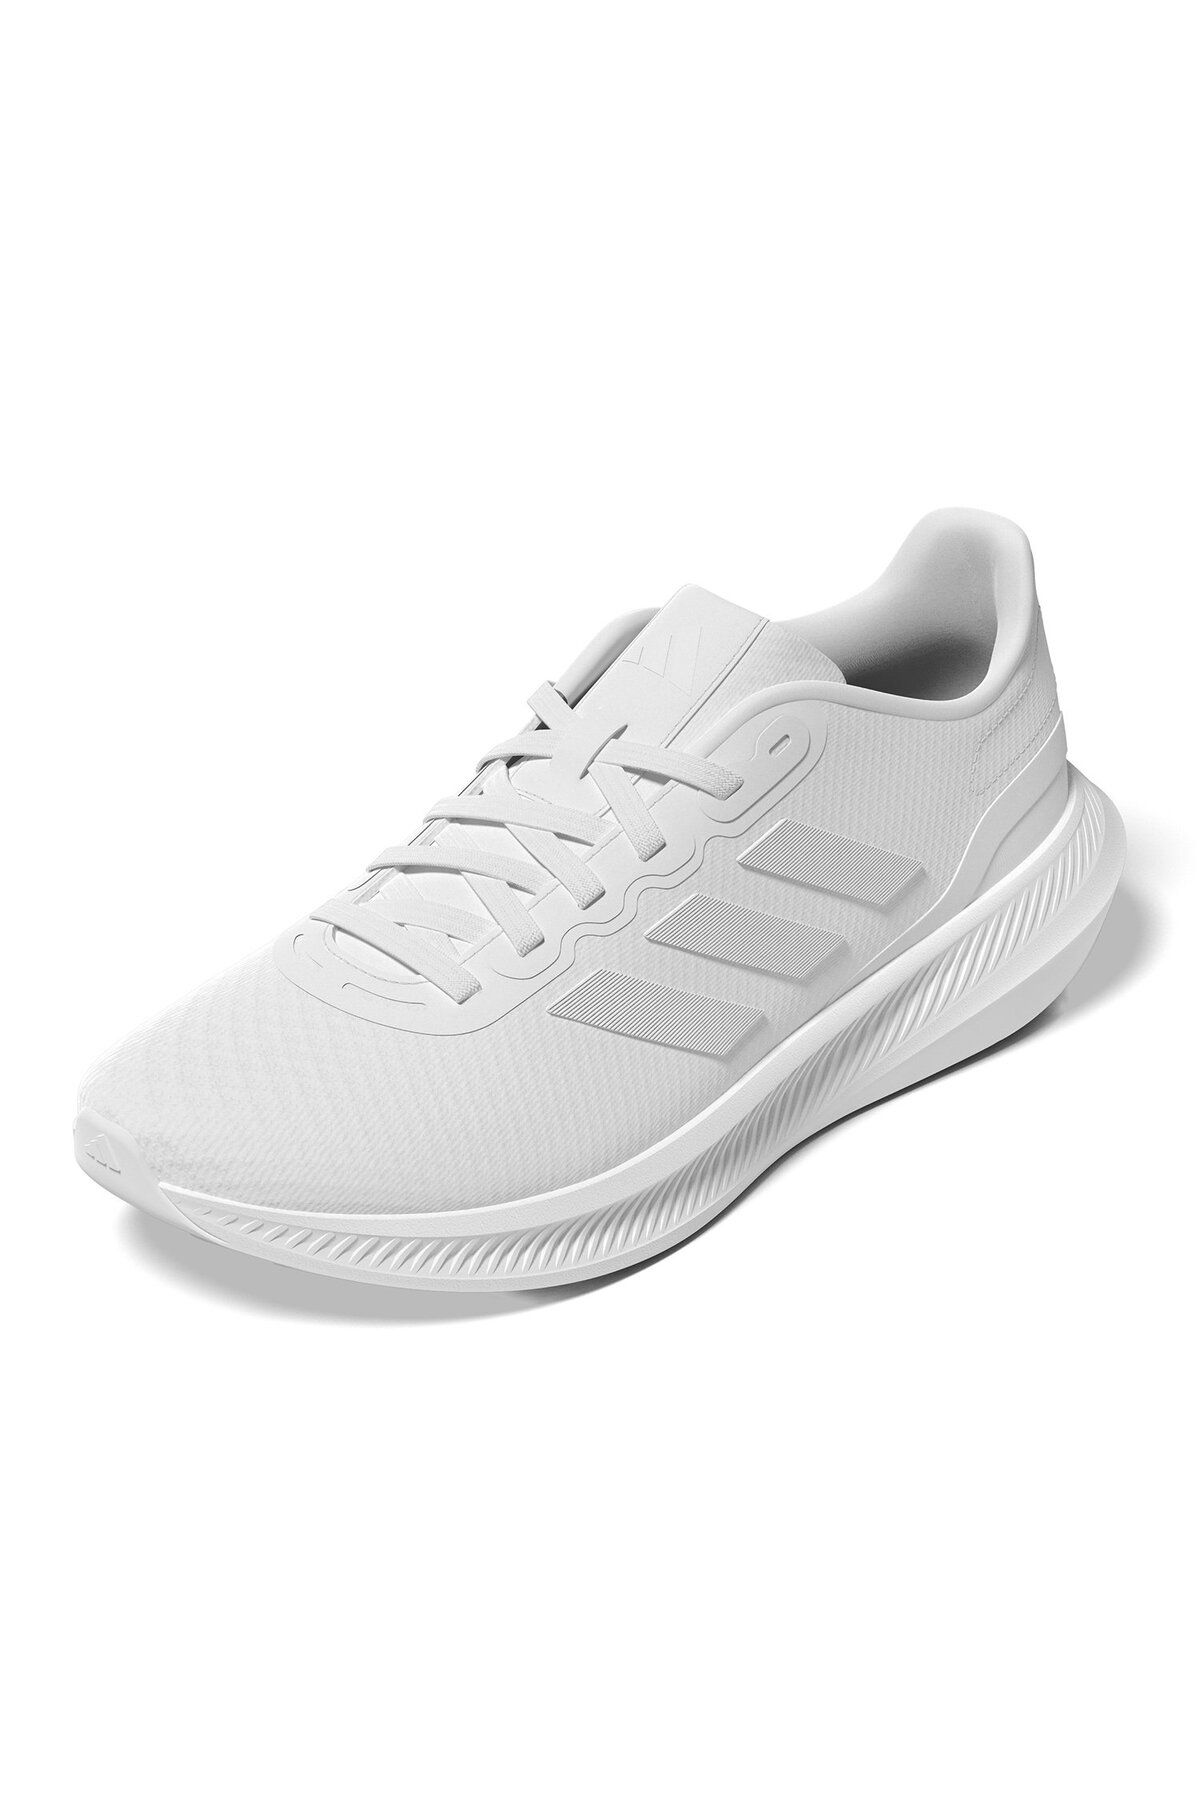 adidas Runfalcon 3.0 Erkek Koşu Ayakkabısı